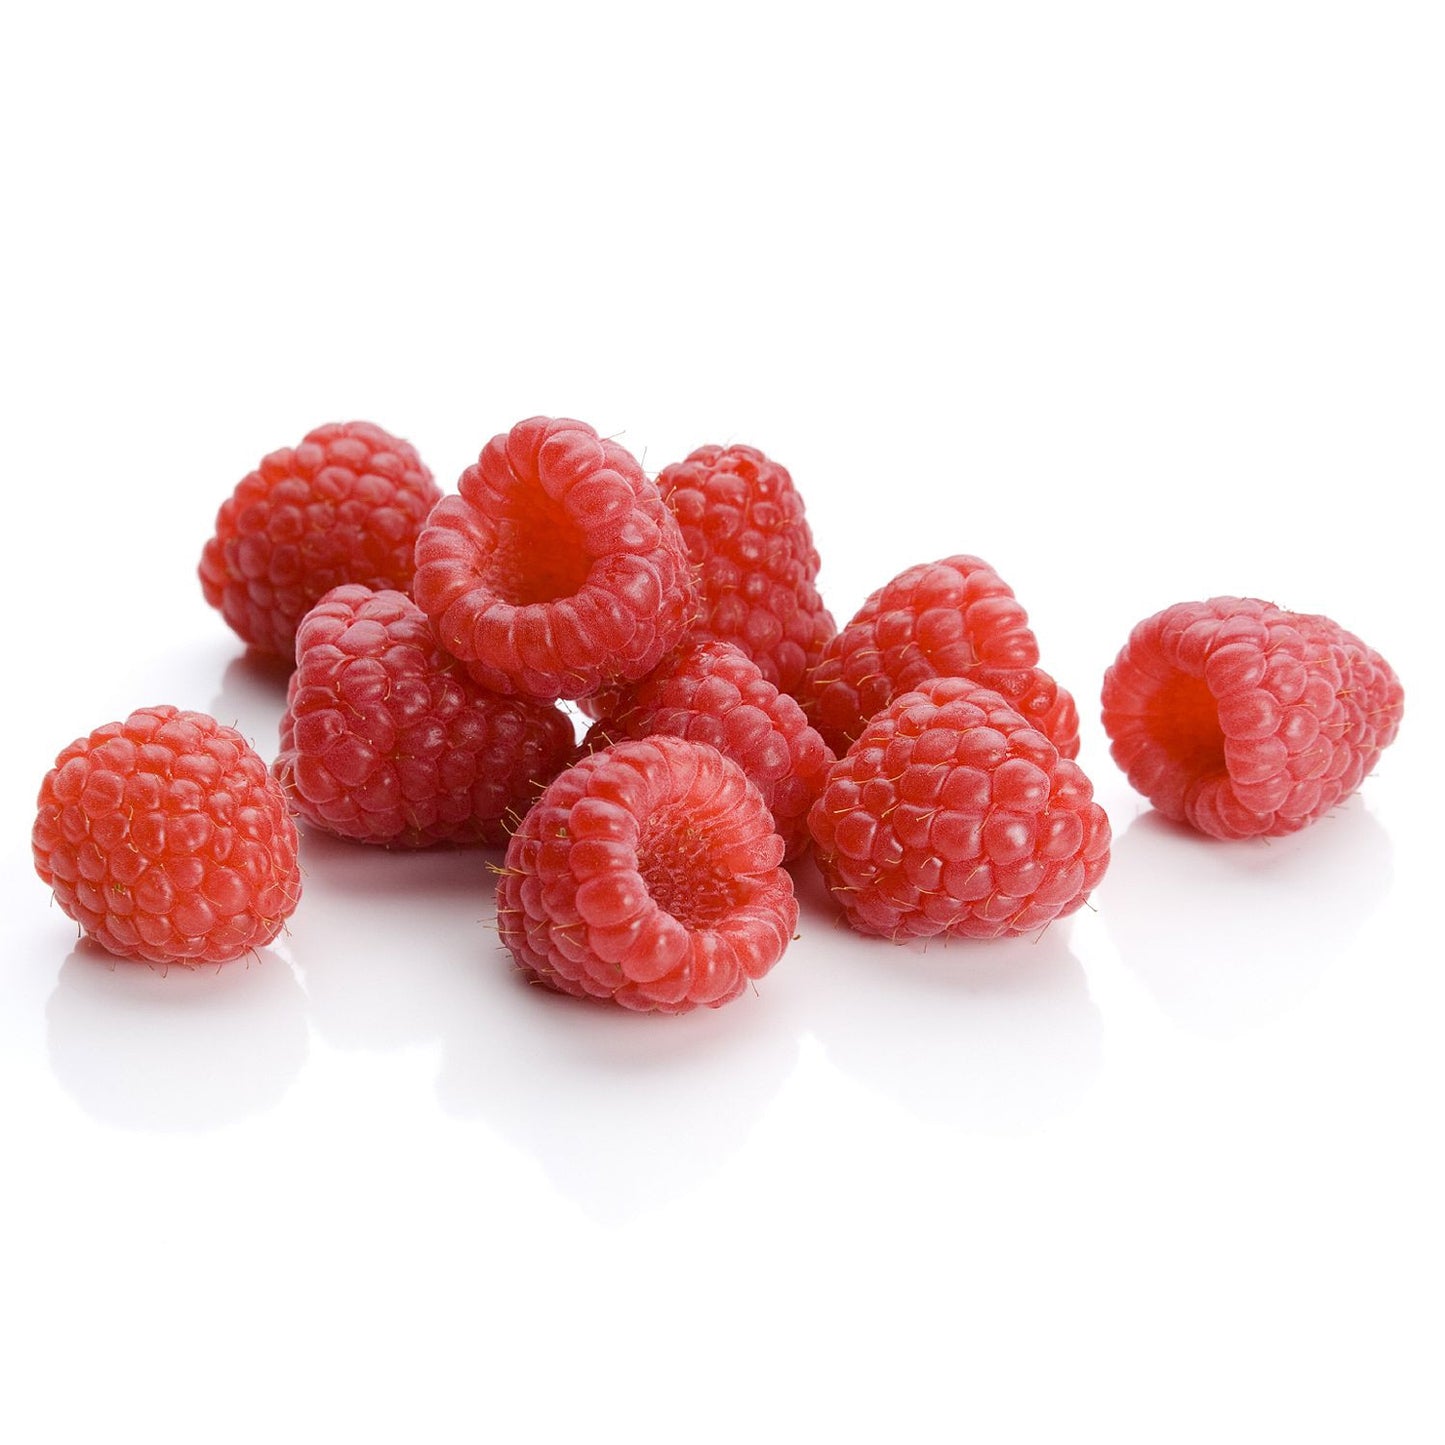 Raspberries (12 oz.)